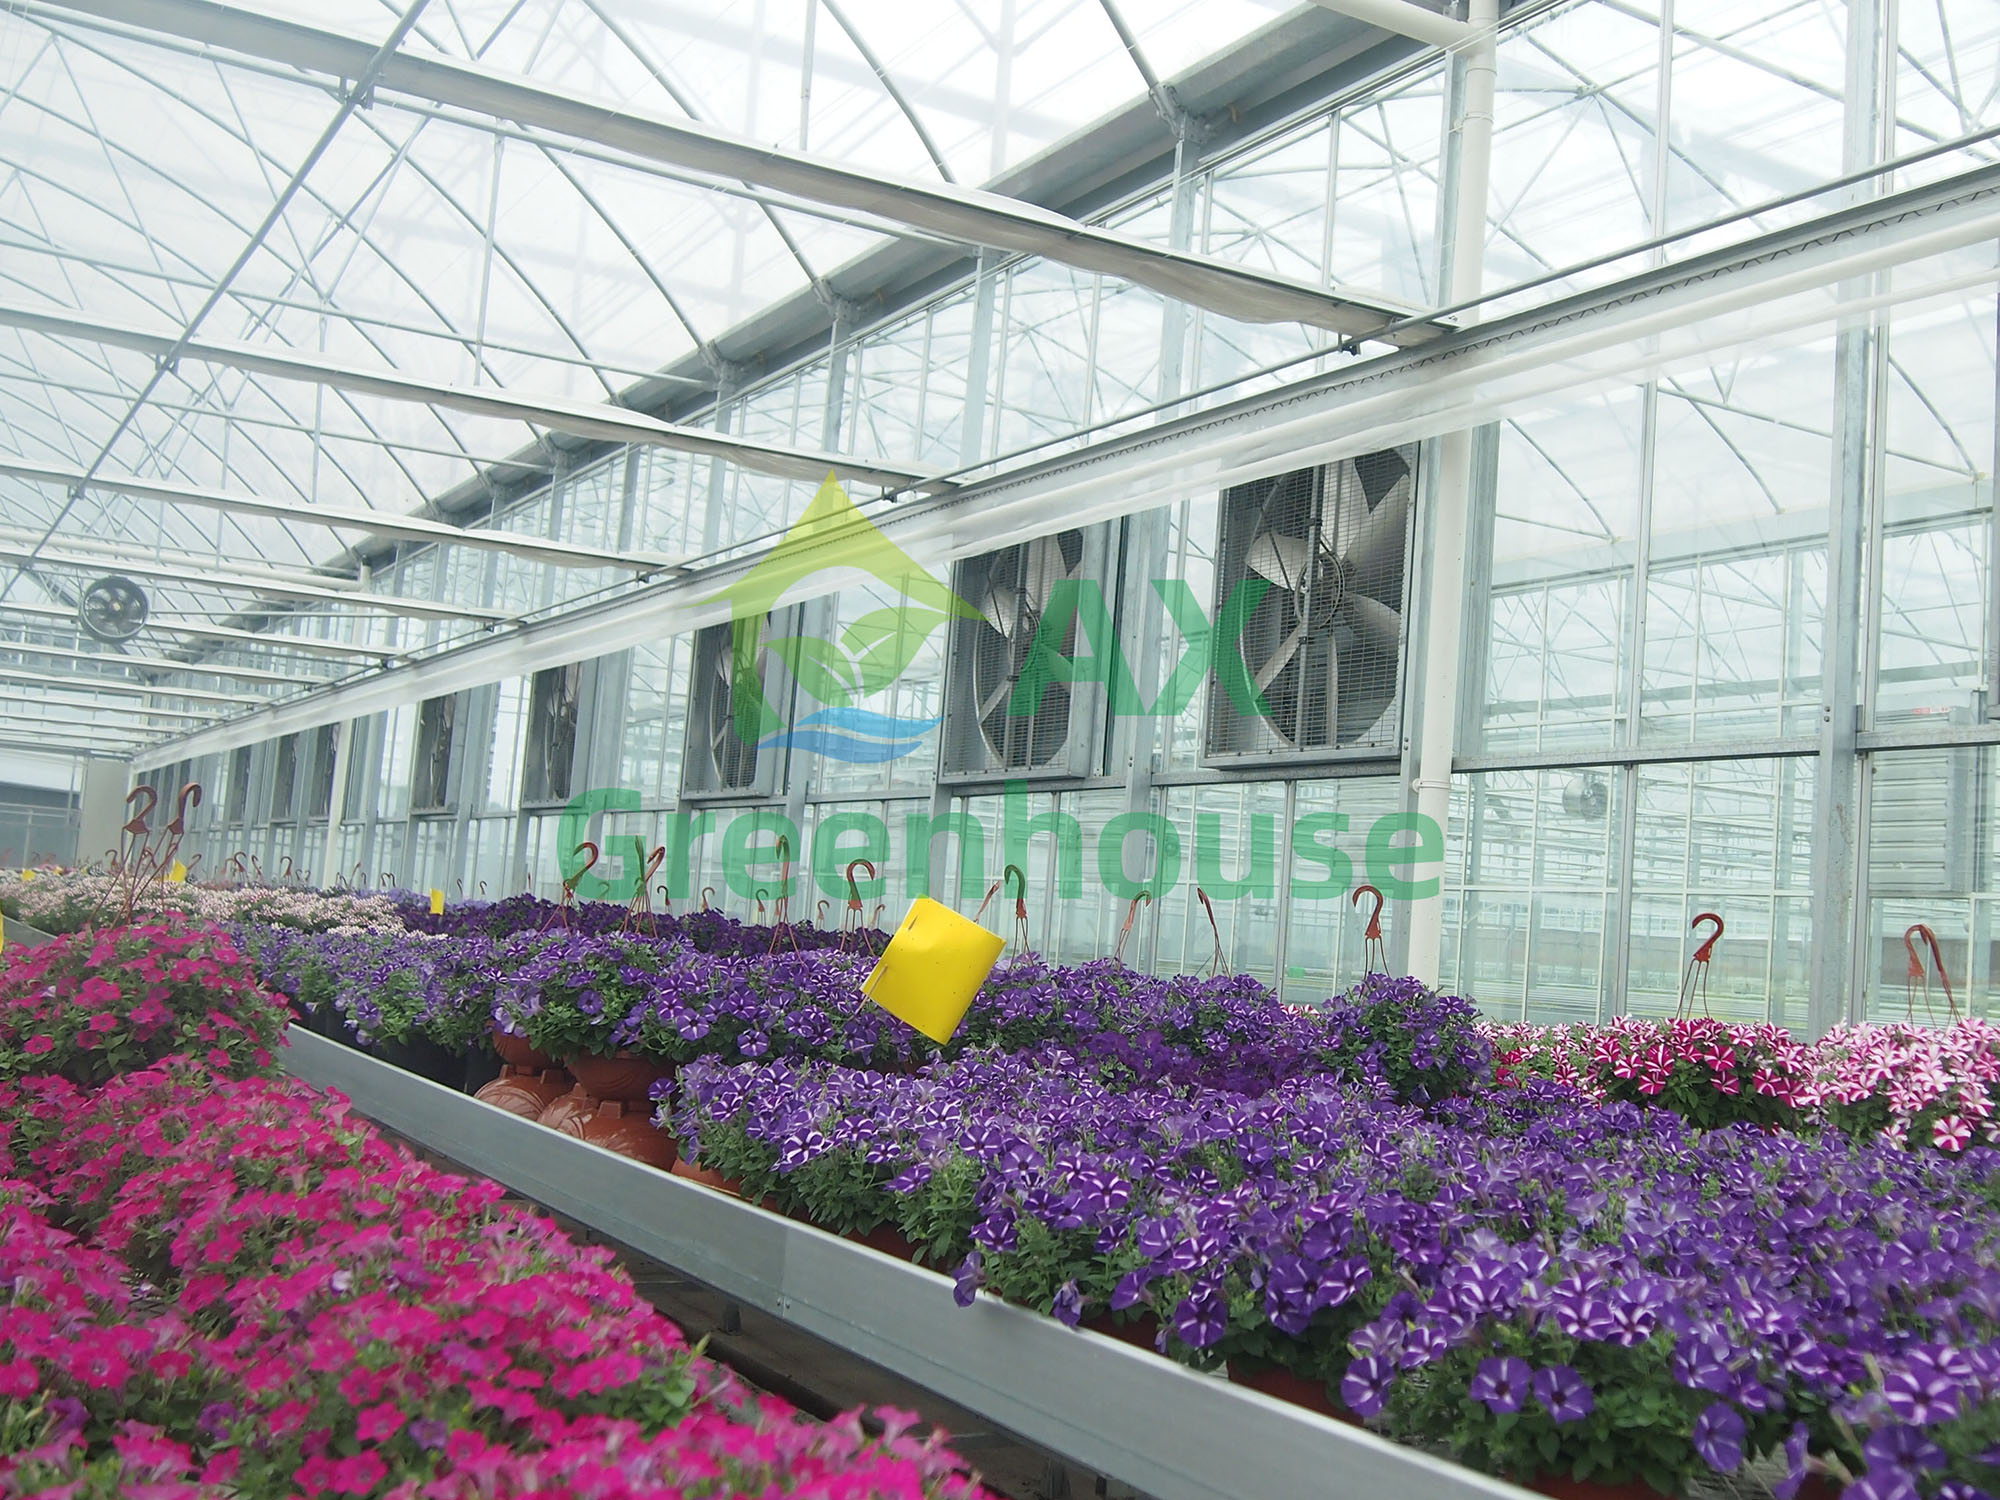 Glimpse of multi span greenhouse